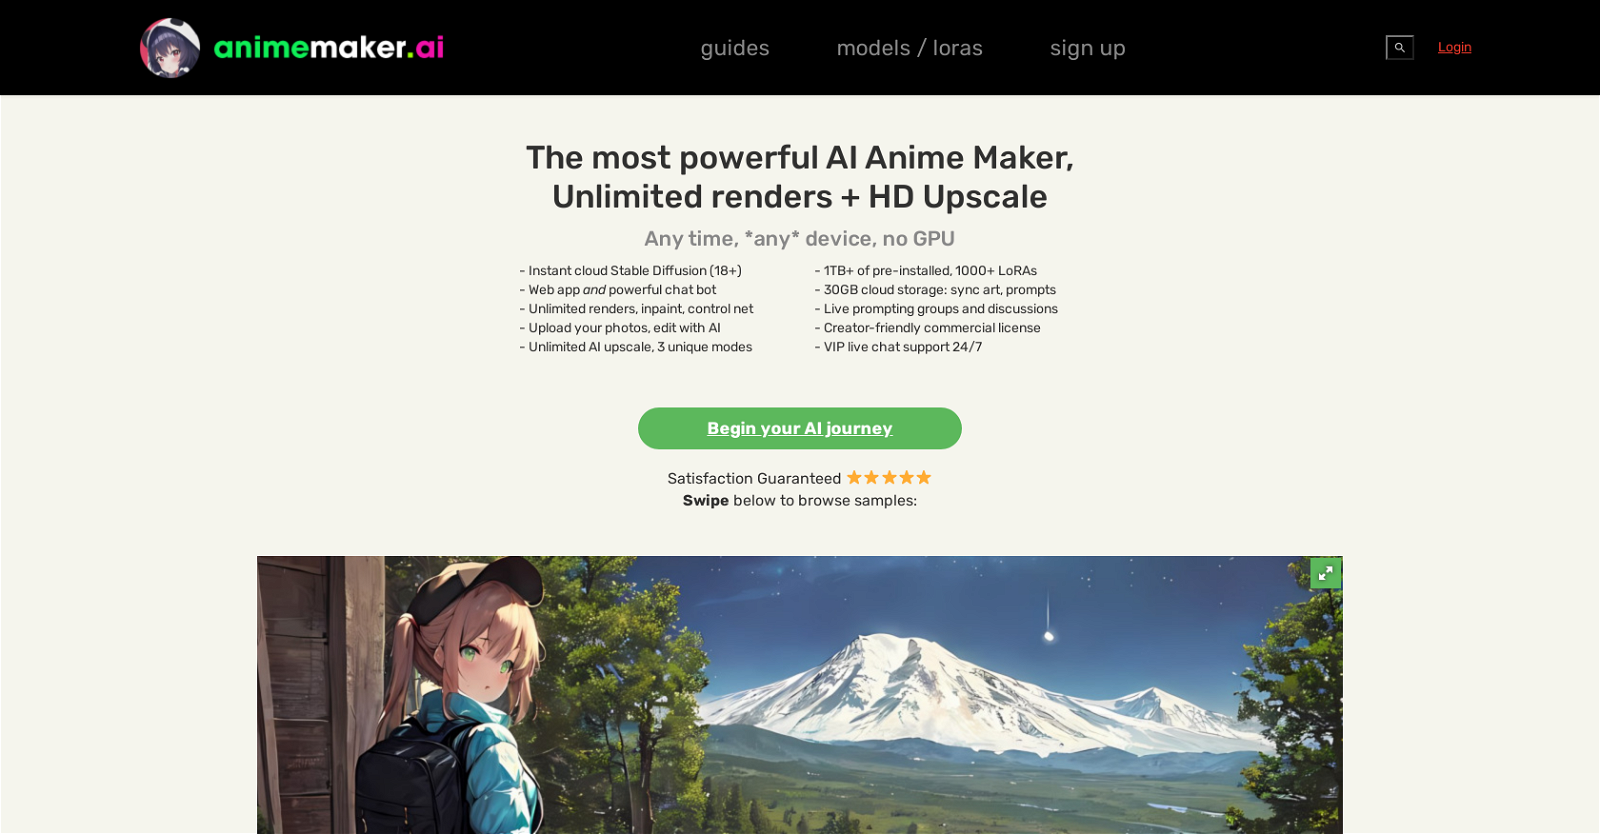 AnimeMakerAI website